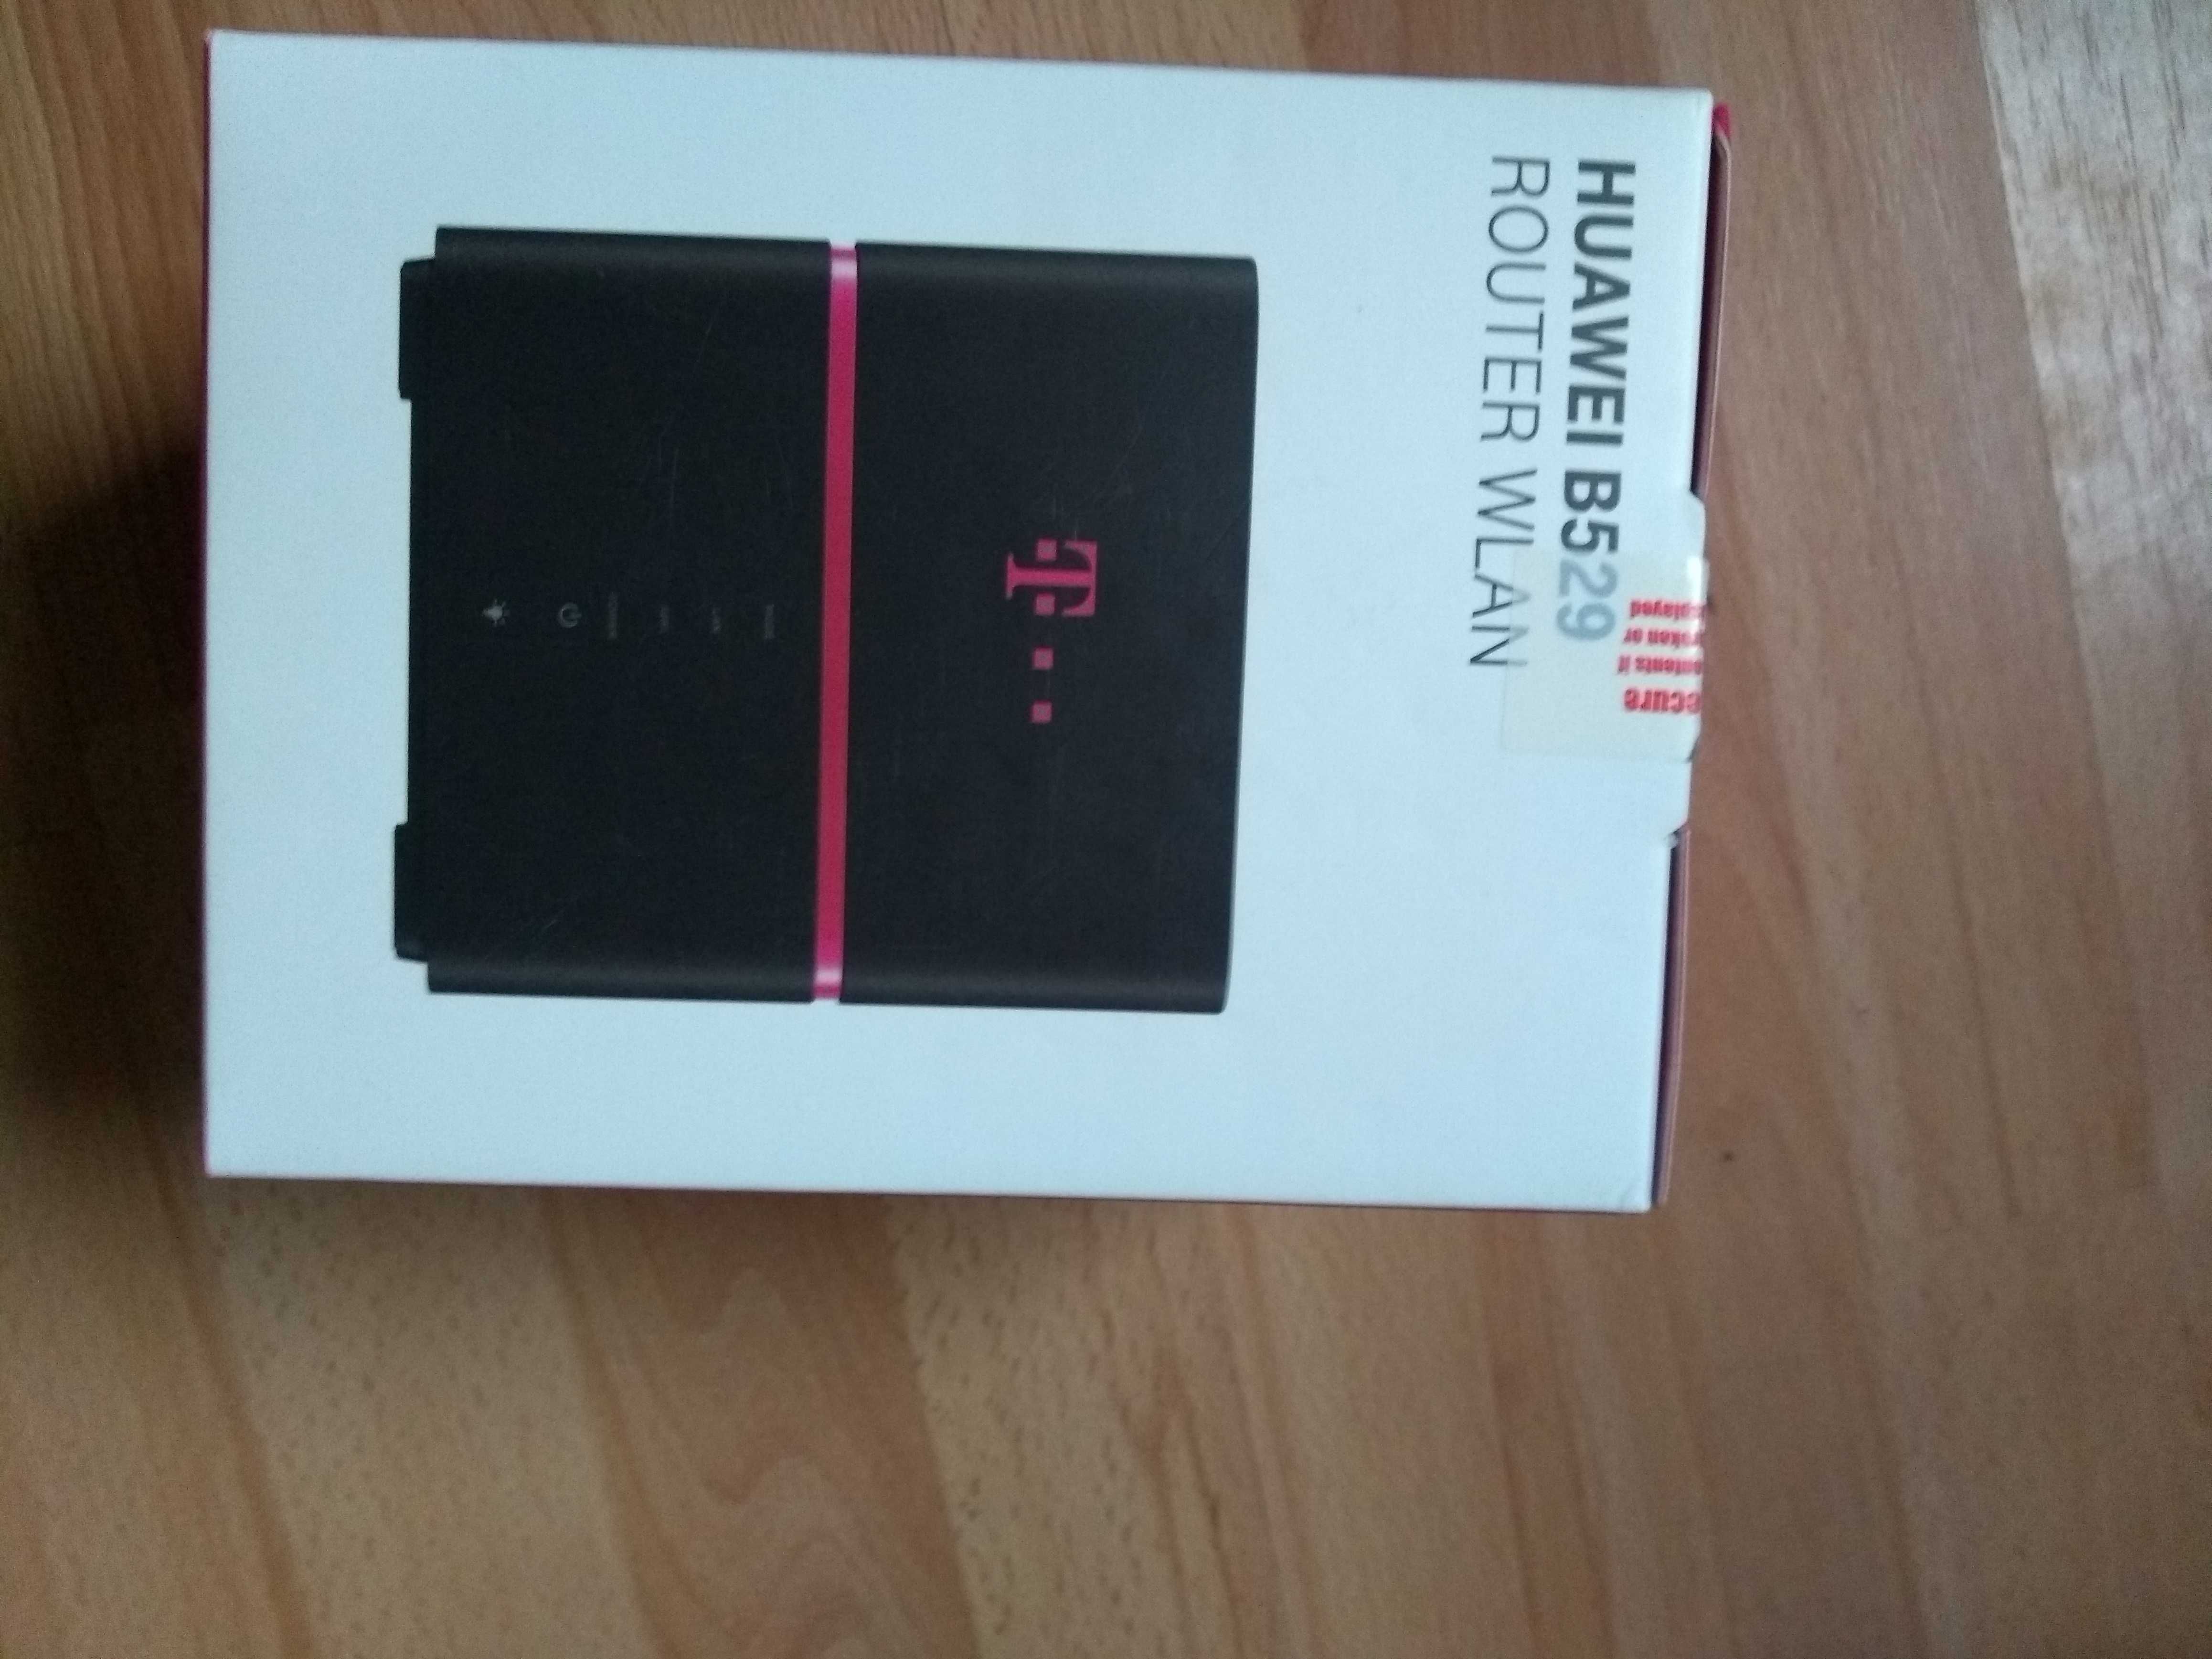 Huawei b529 modem